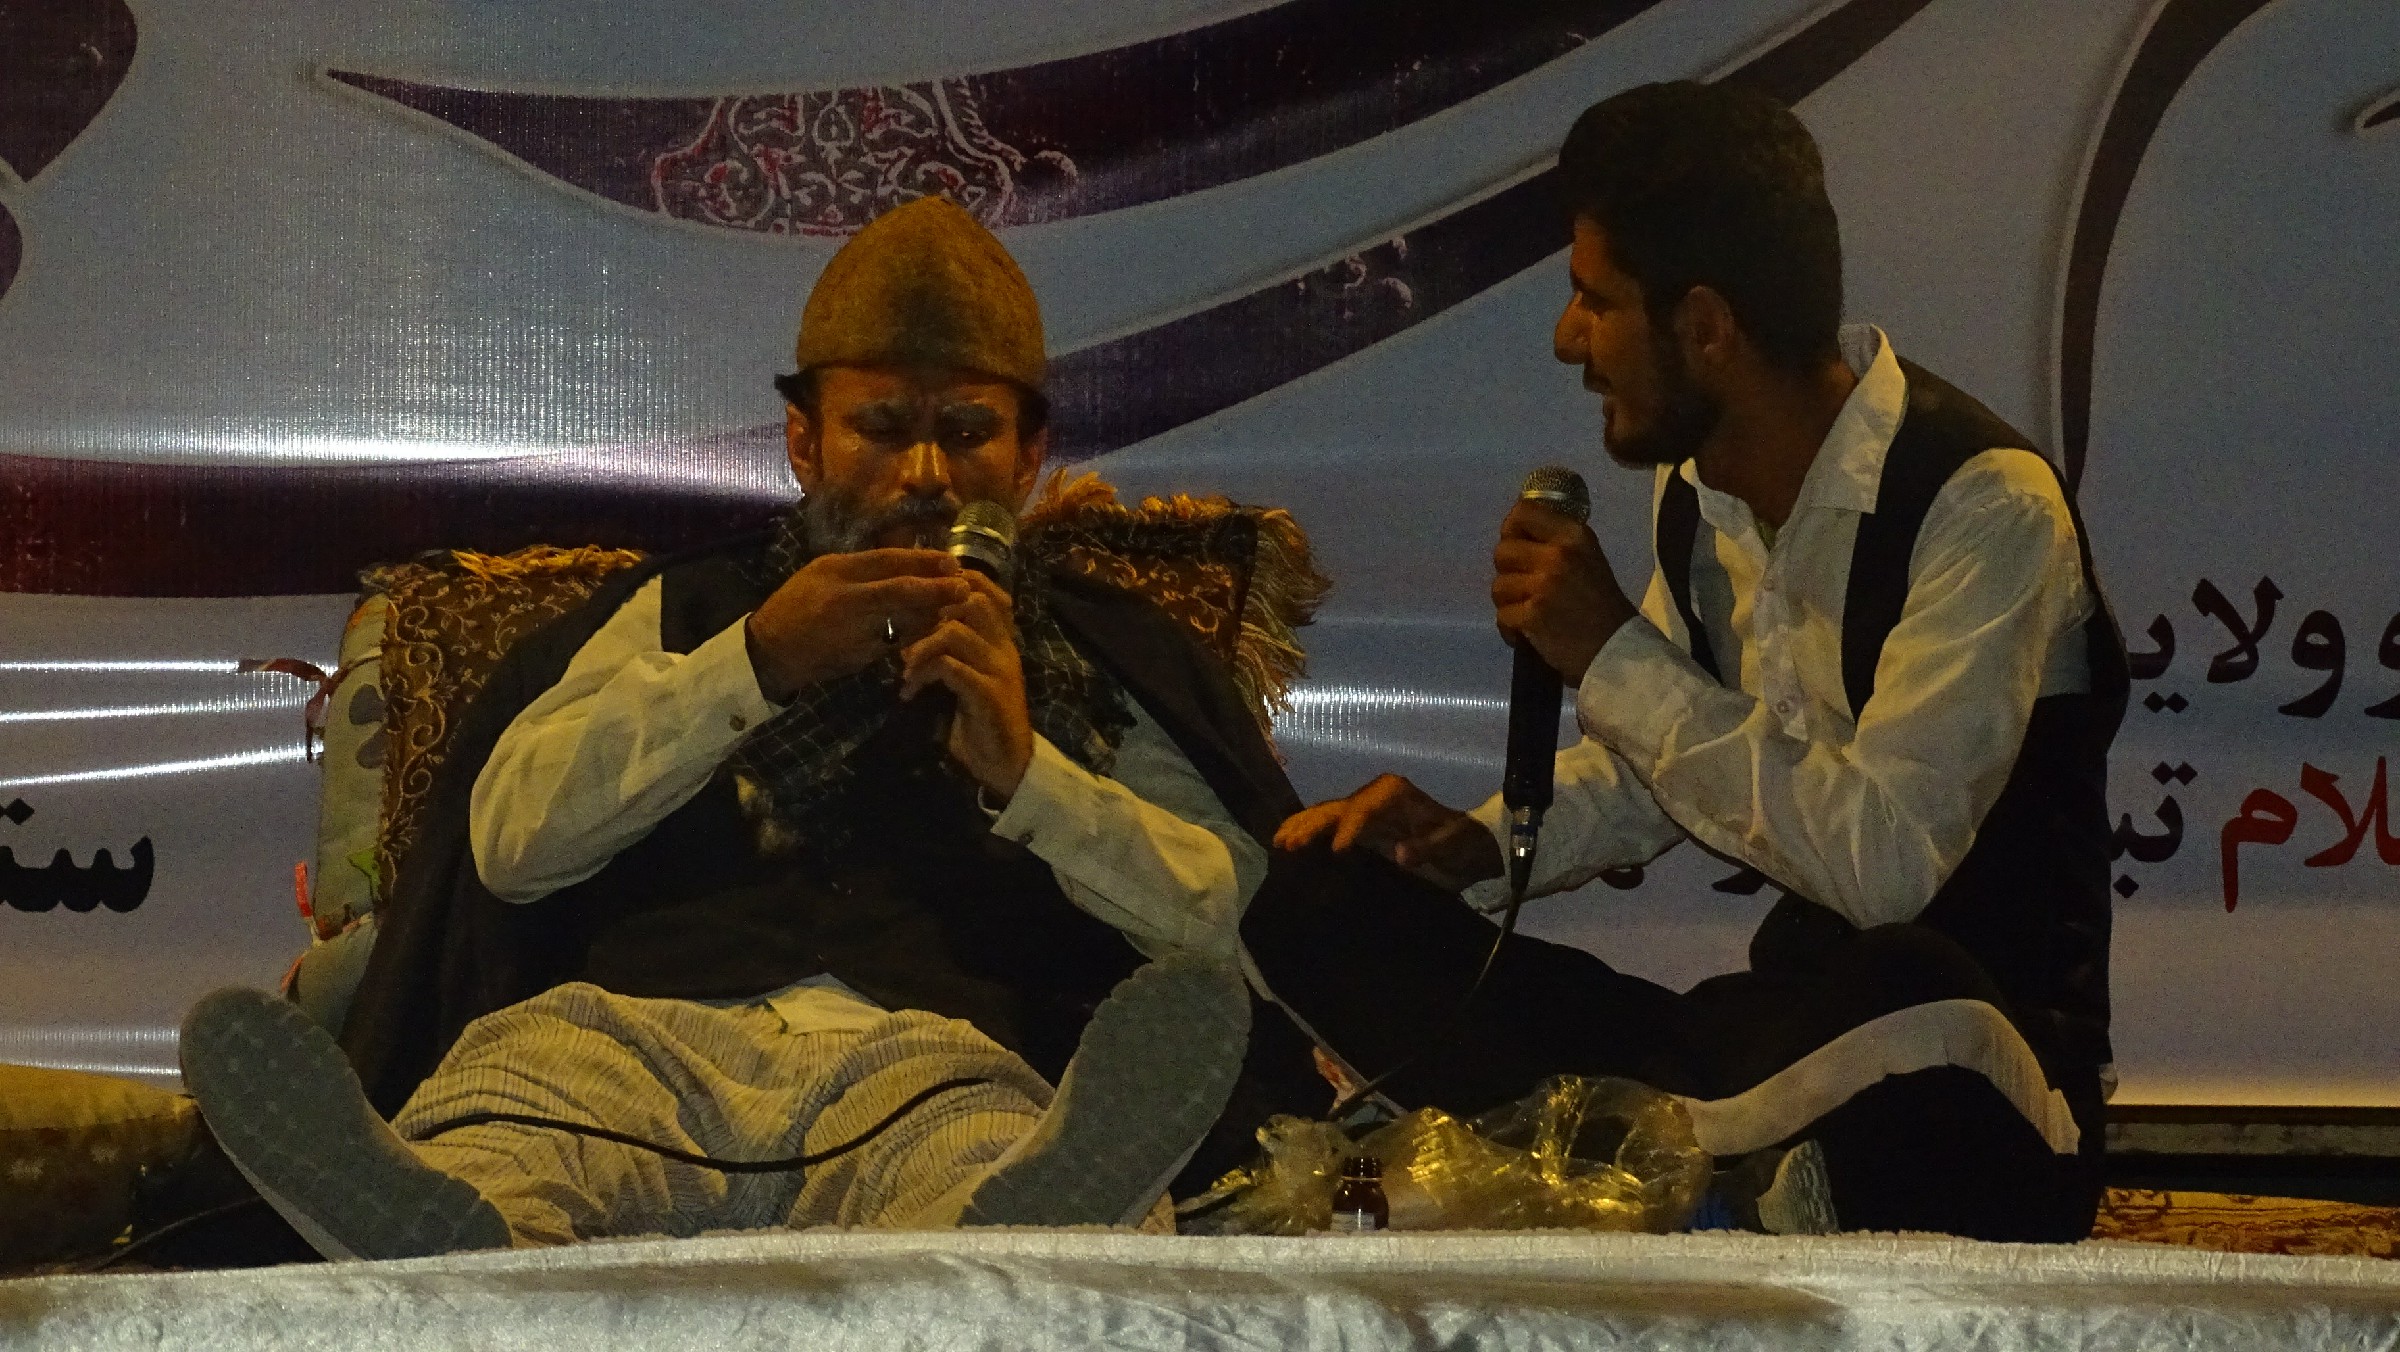  جشن میلاد امام رضا (ع) در شهرستان بهمئی با حضور پرشور مردم و مسئولین برگزار گردید + عکس